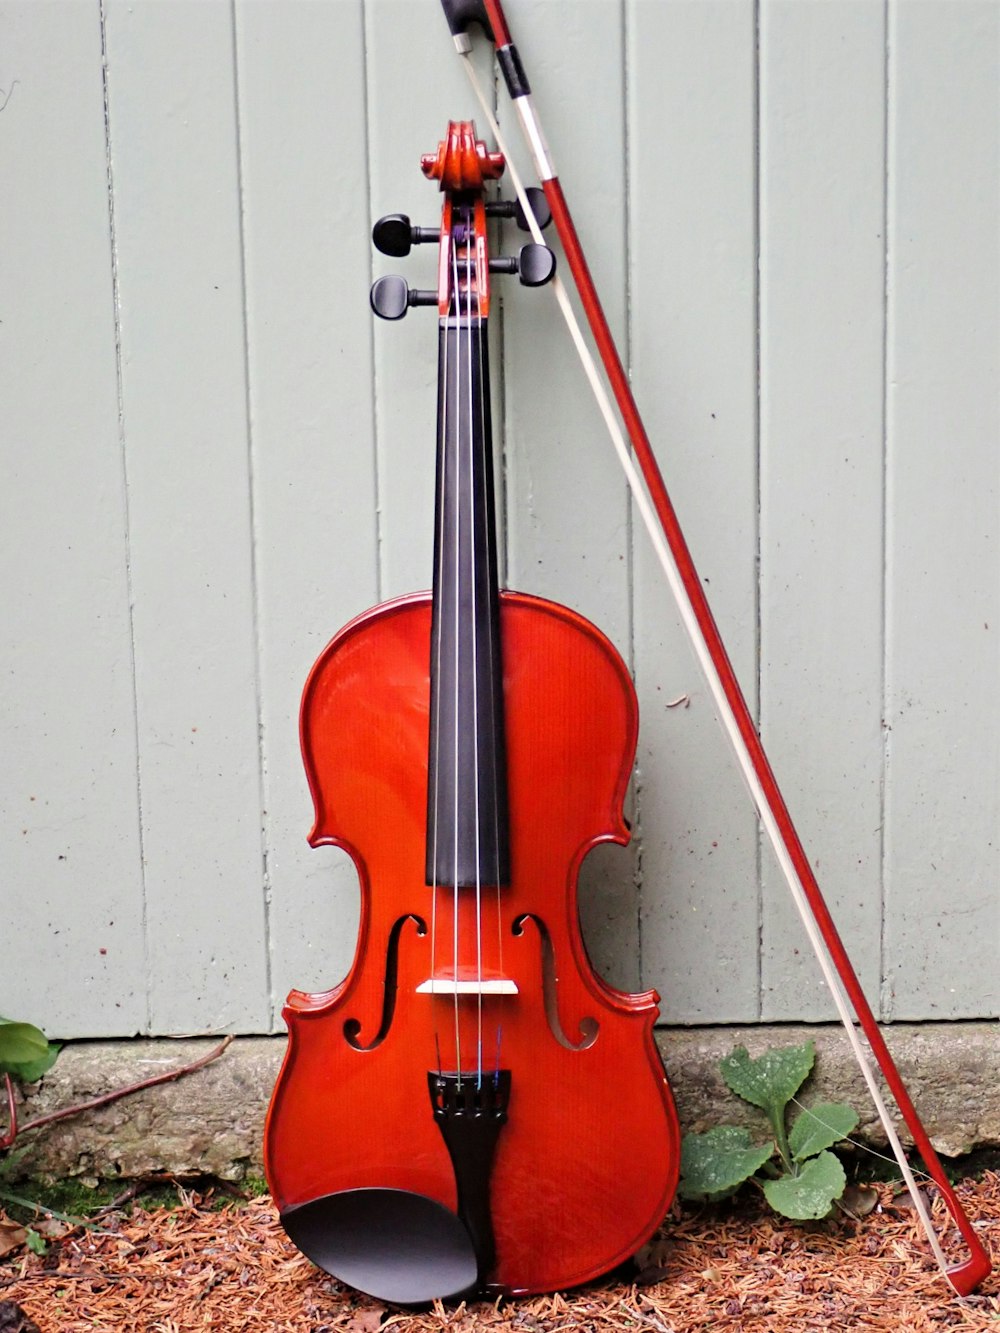 Eine Geige, die sich an eine Wand lehnt